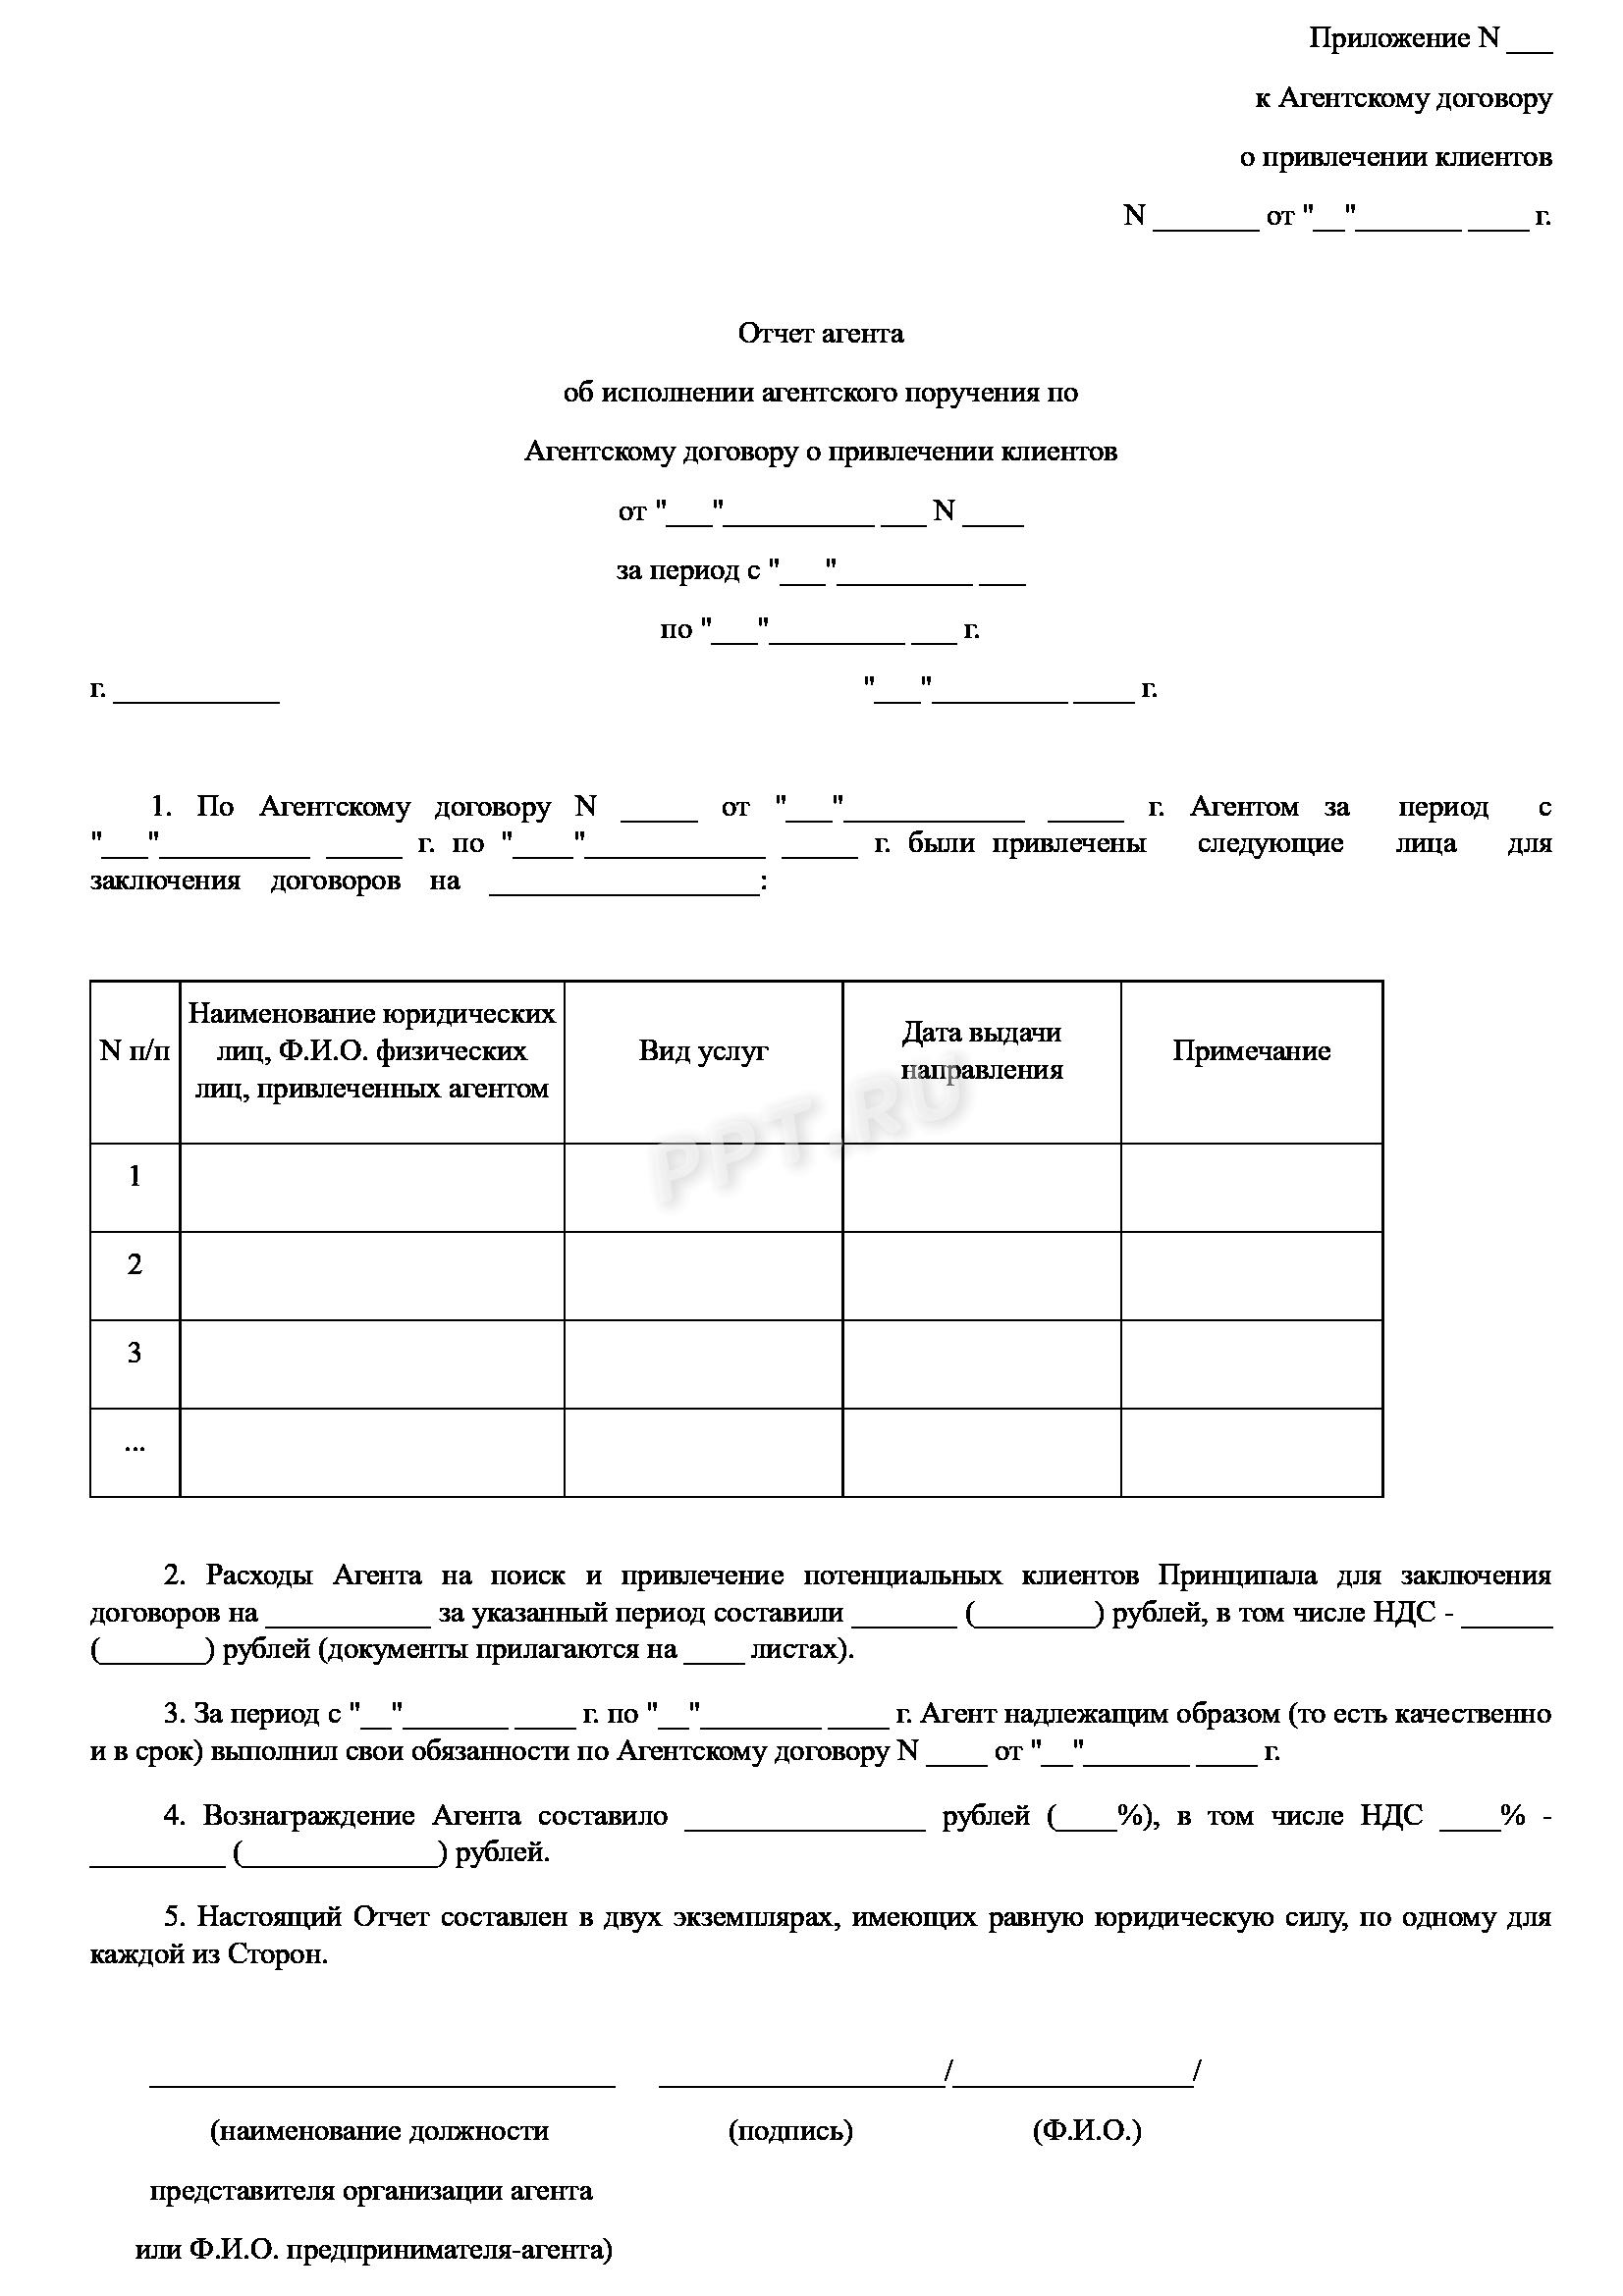 Акт по агентскому договору (Документ Савченко О.С.)